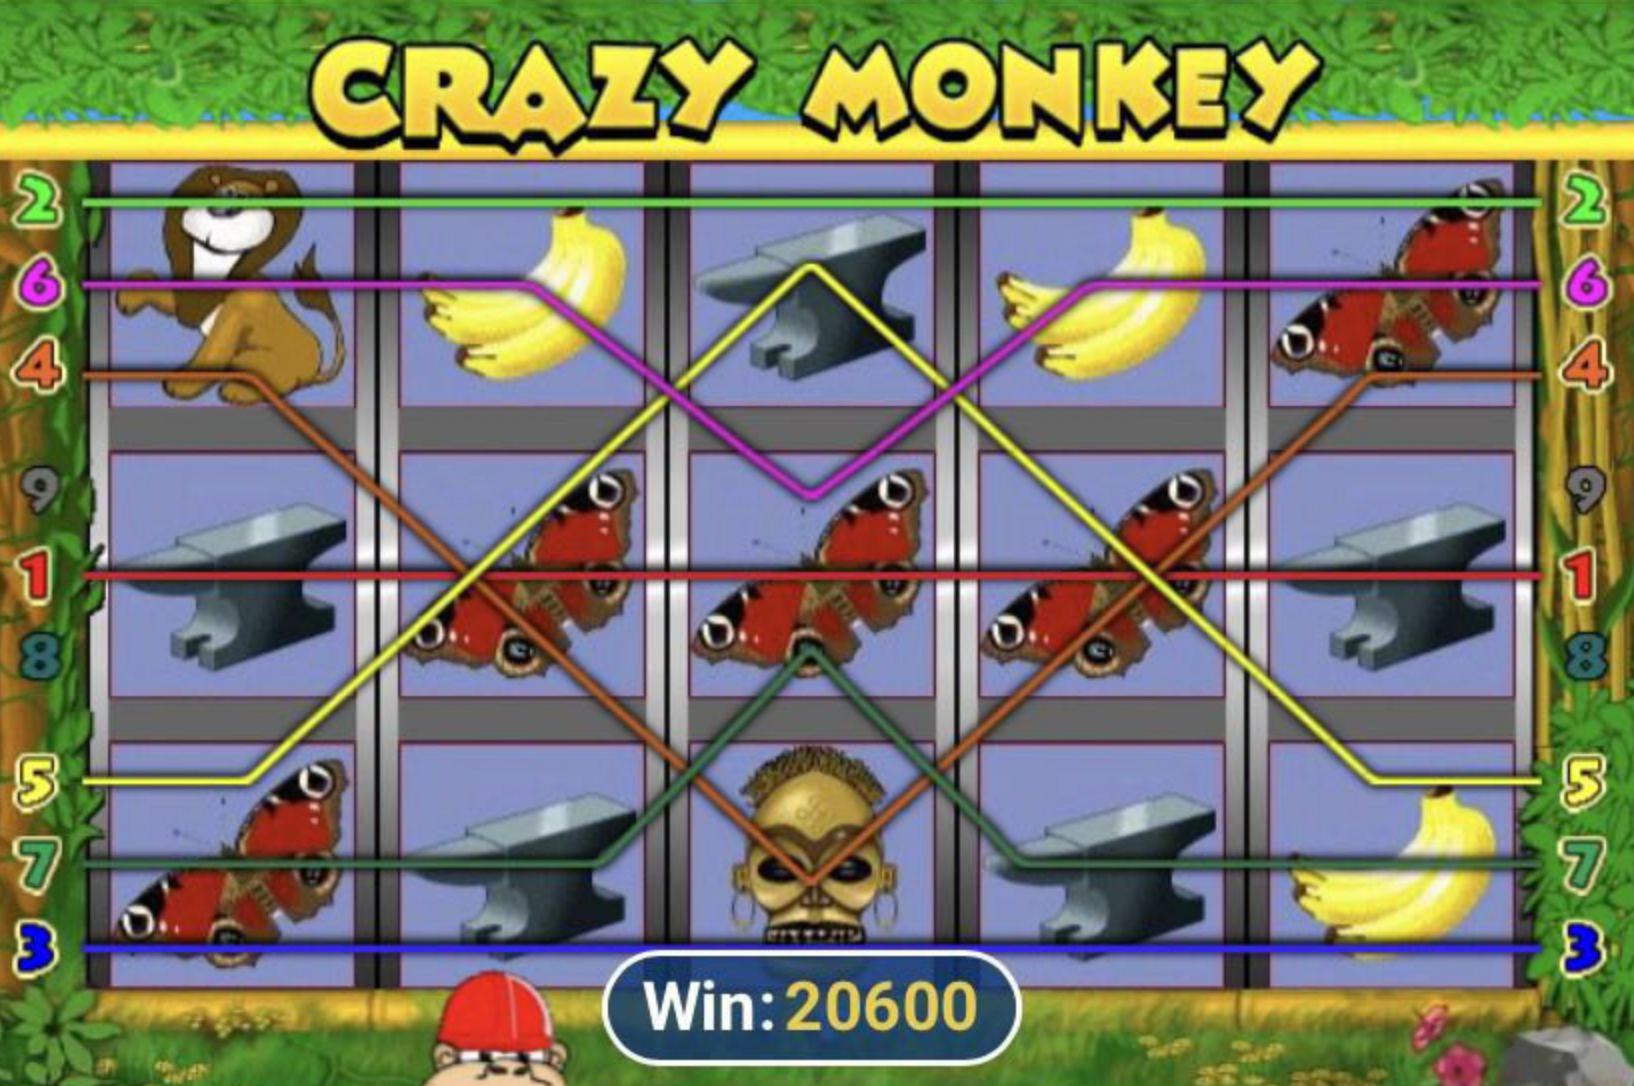 Crazy monkey slot ru4. Схема игры Crazy Monkey. Crazy Monkey схема. Энг он манки игра.